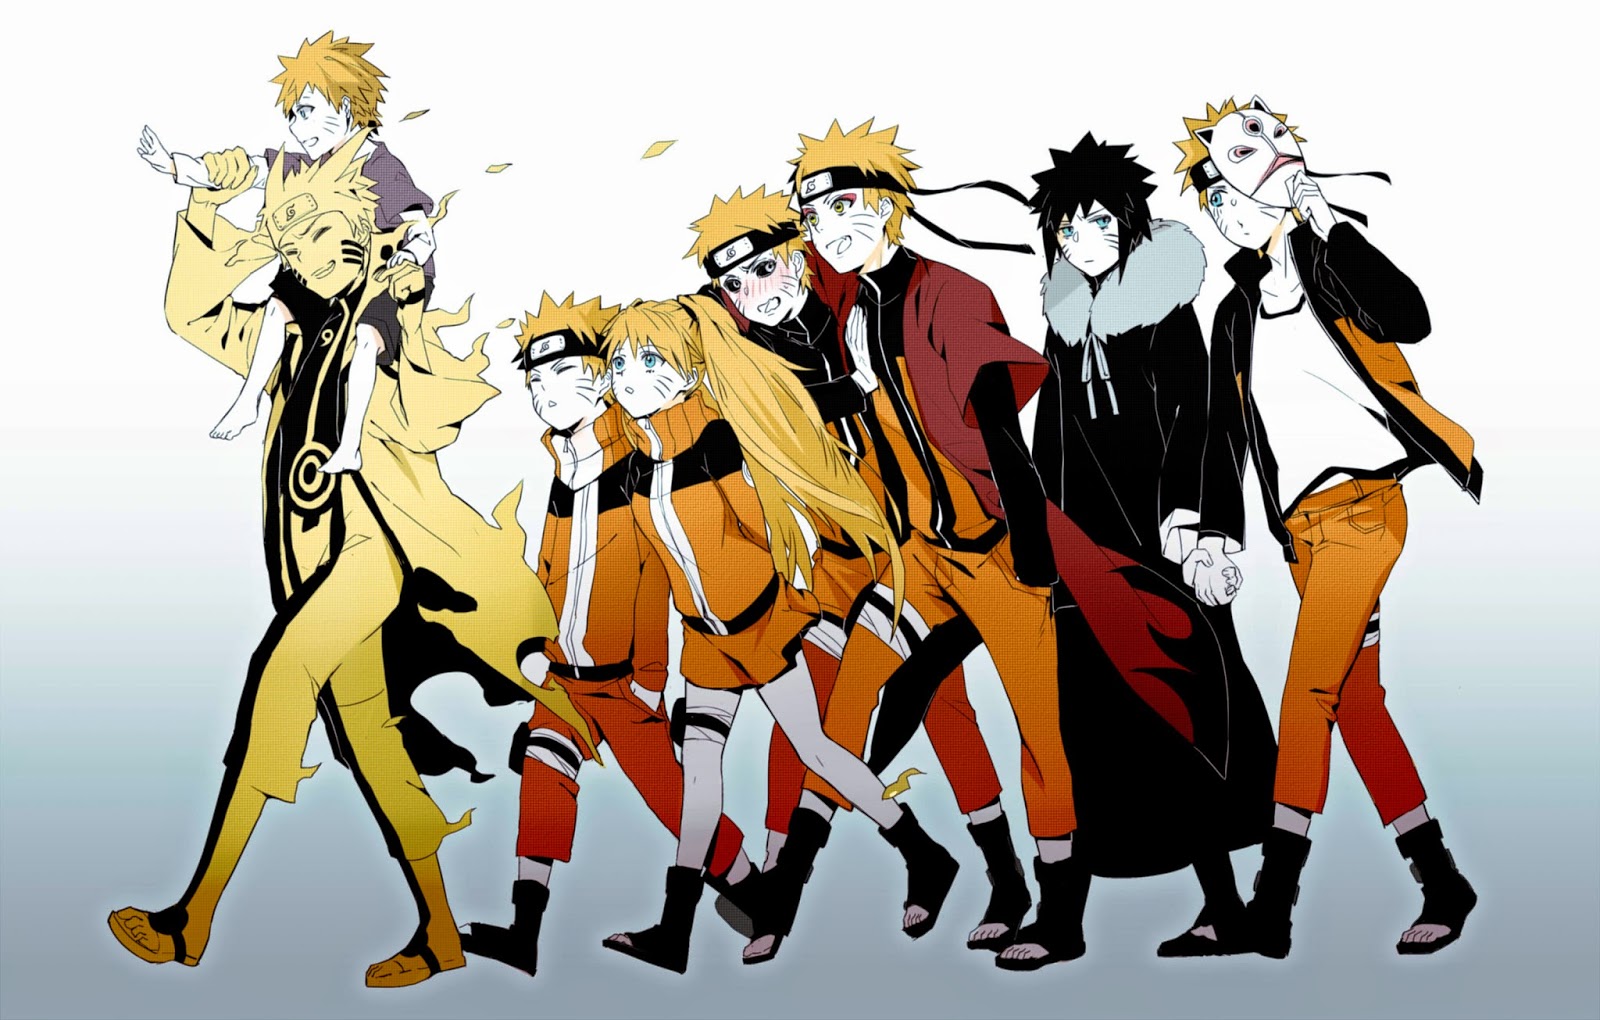 Kumpulan Gambar Naruto | Gambar Lucu Terbaru Cartoon Animation Pictures